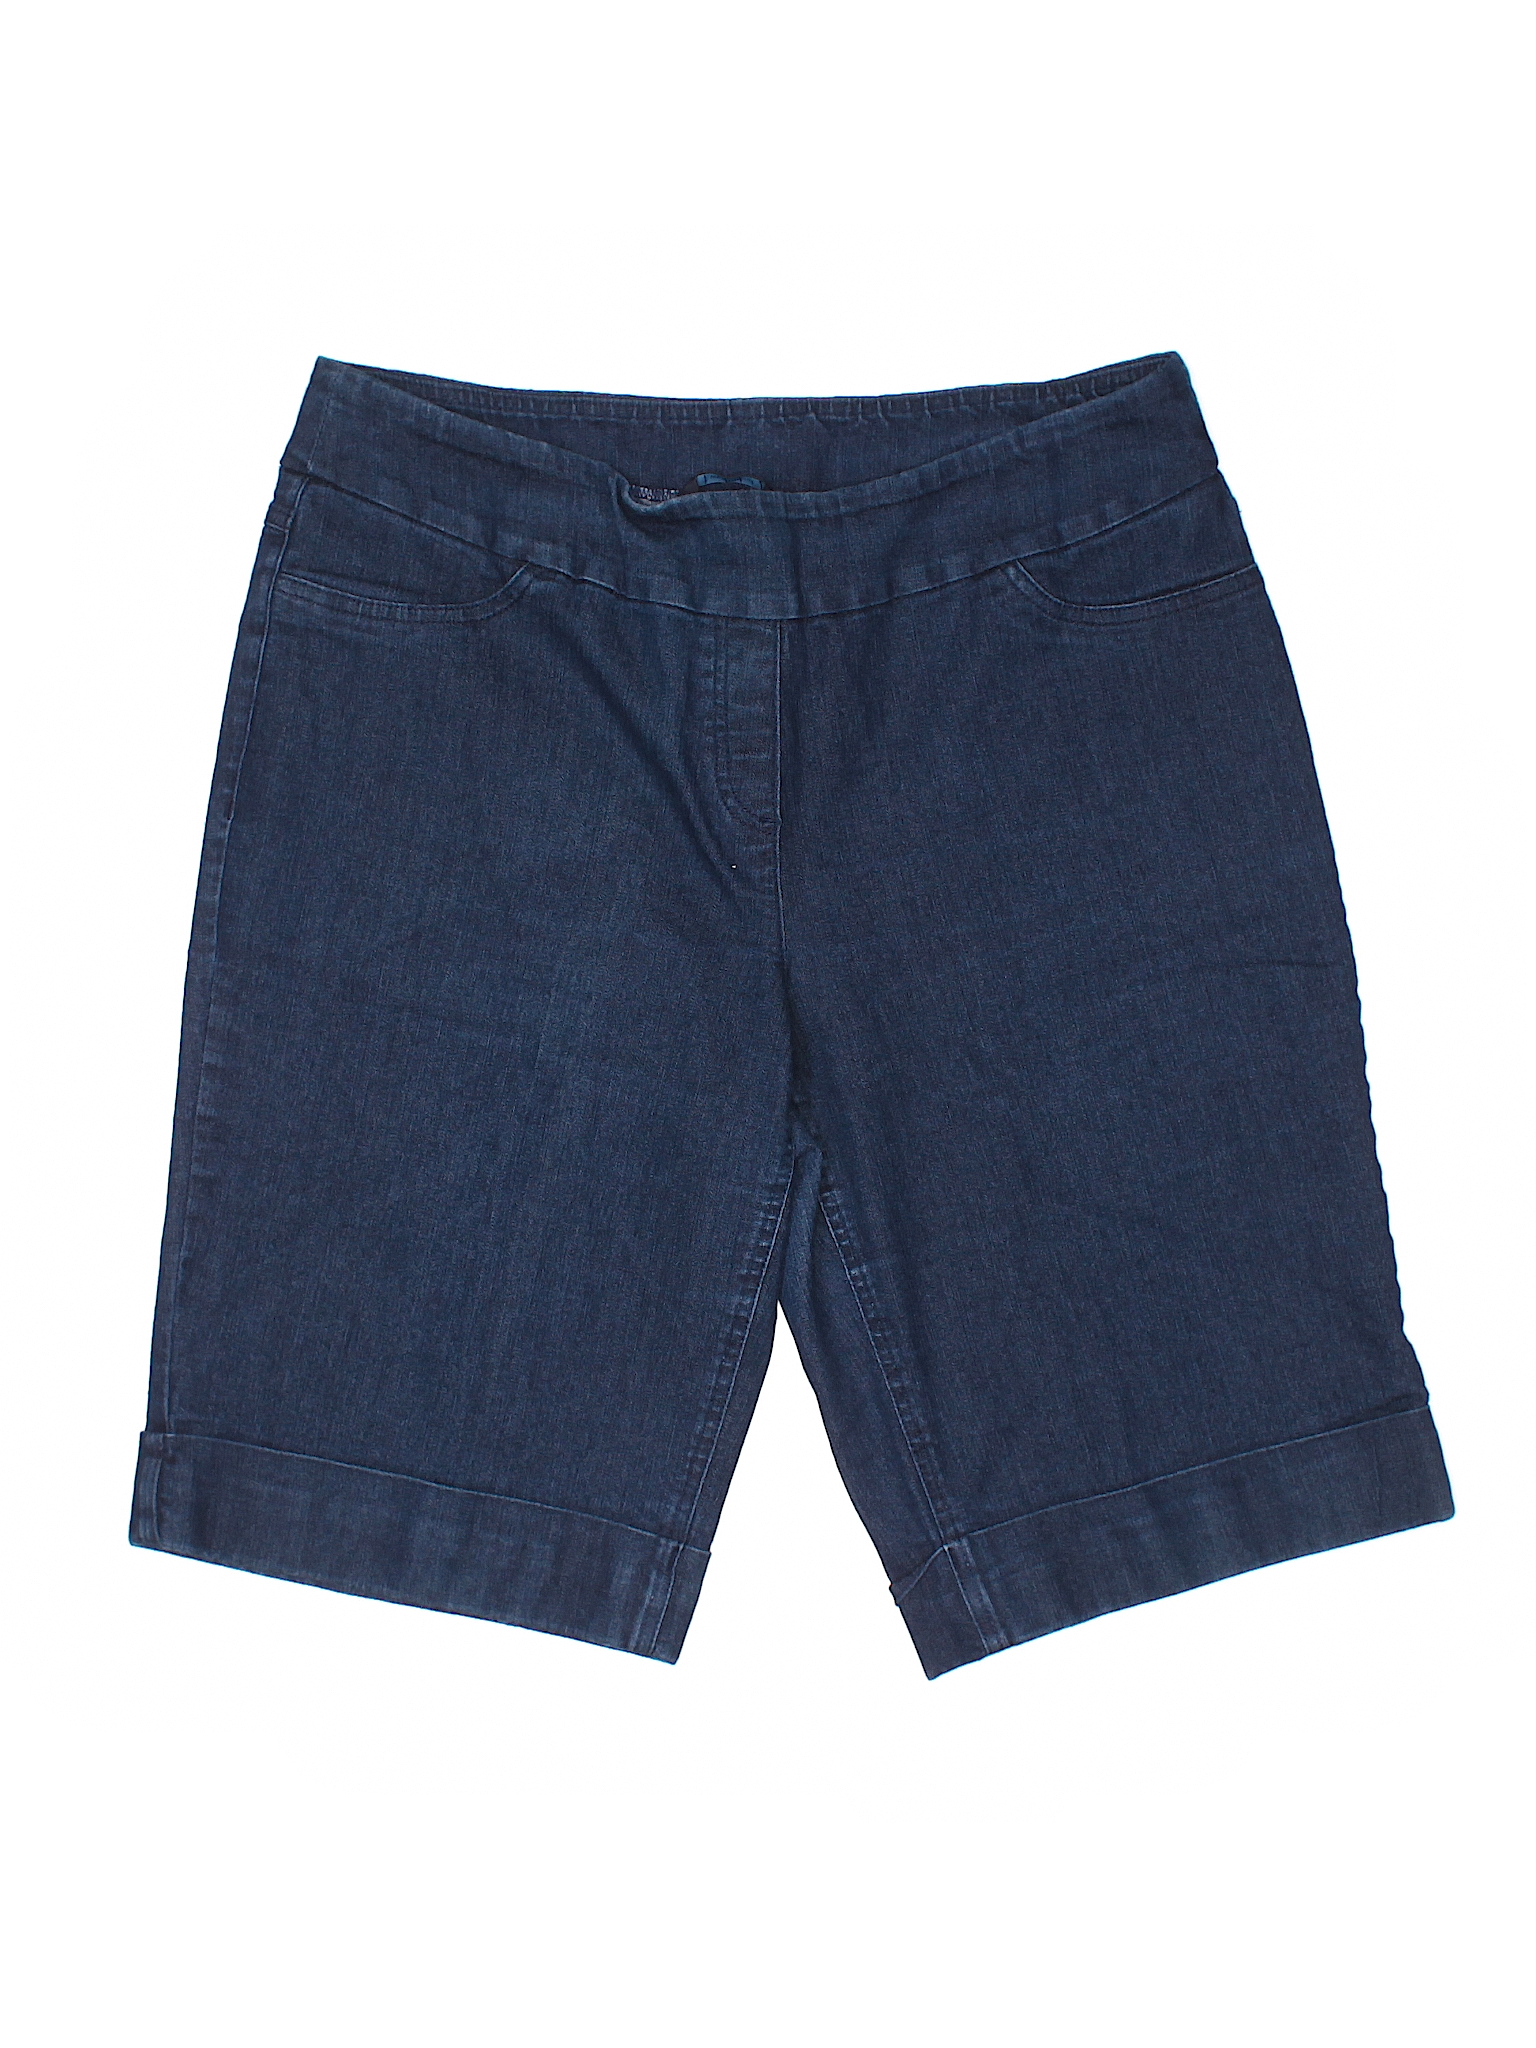 Westbound Solid Navy Blue Denim Shorts Size 16 - 54% off | thredUP